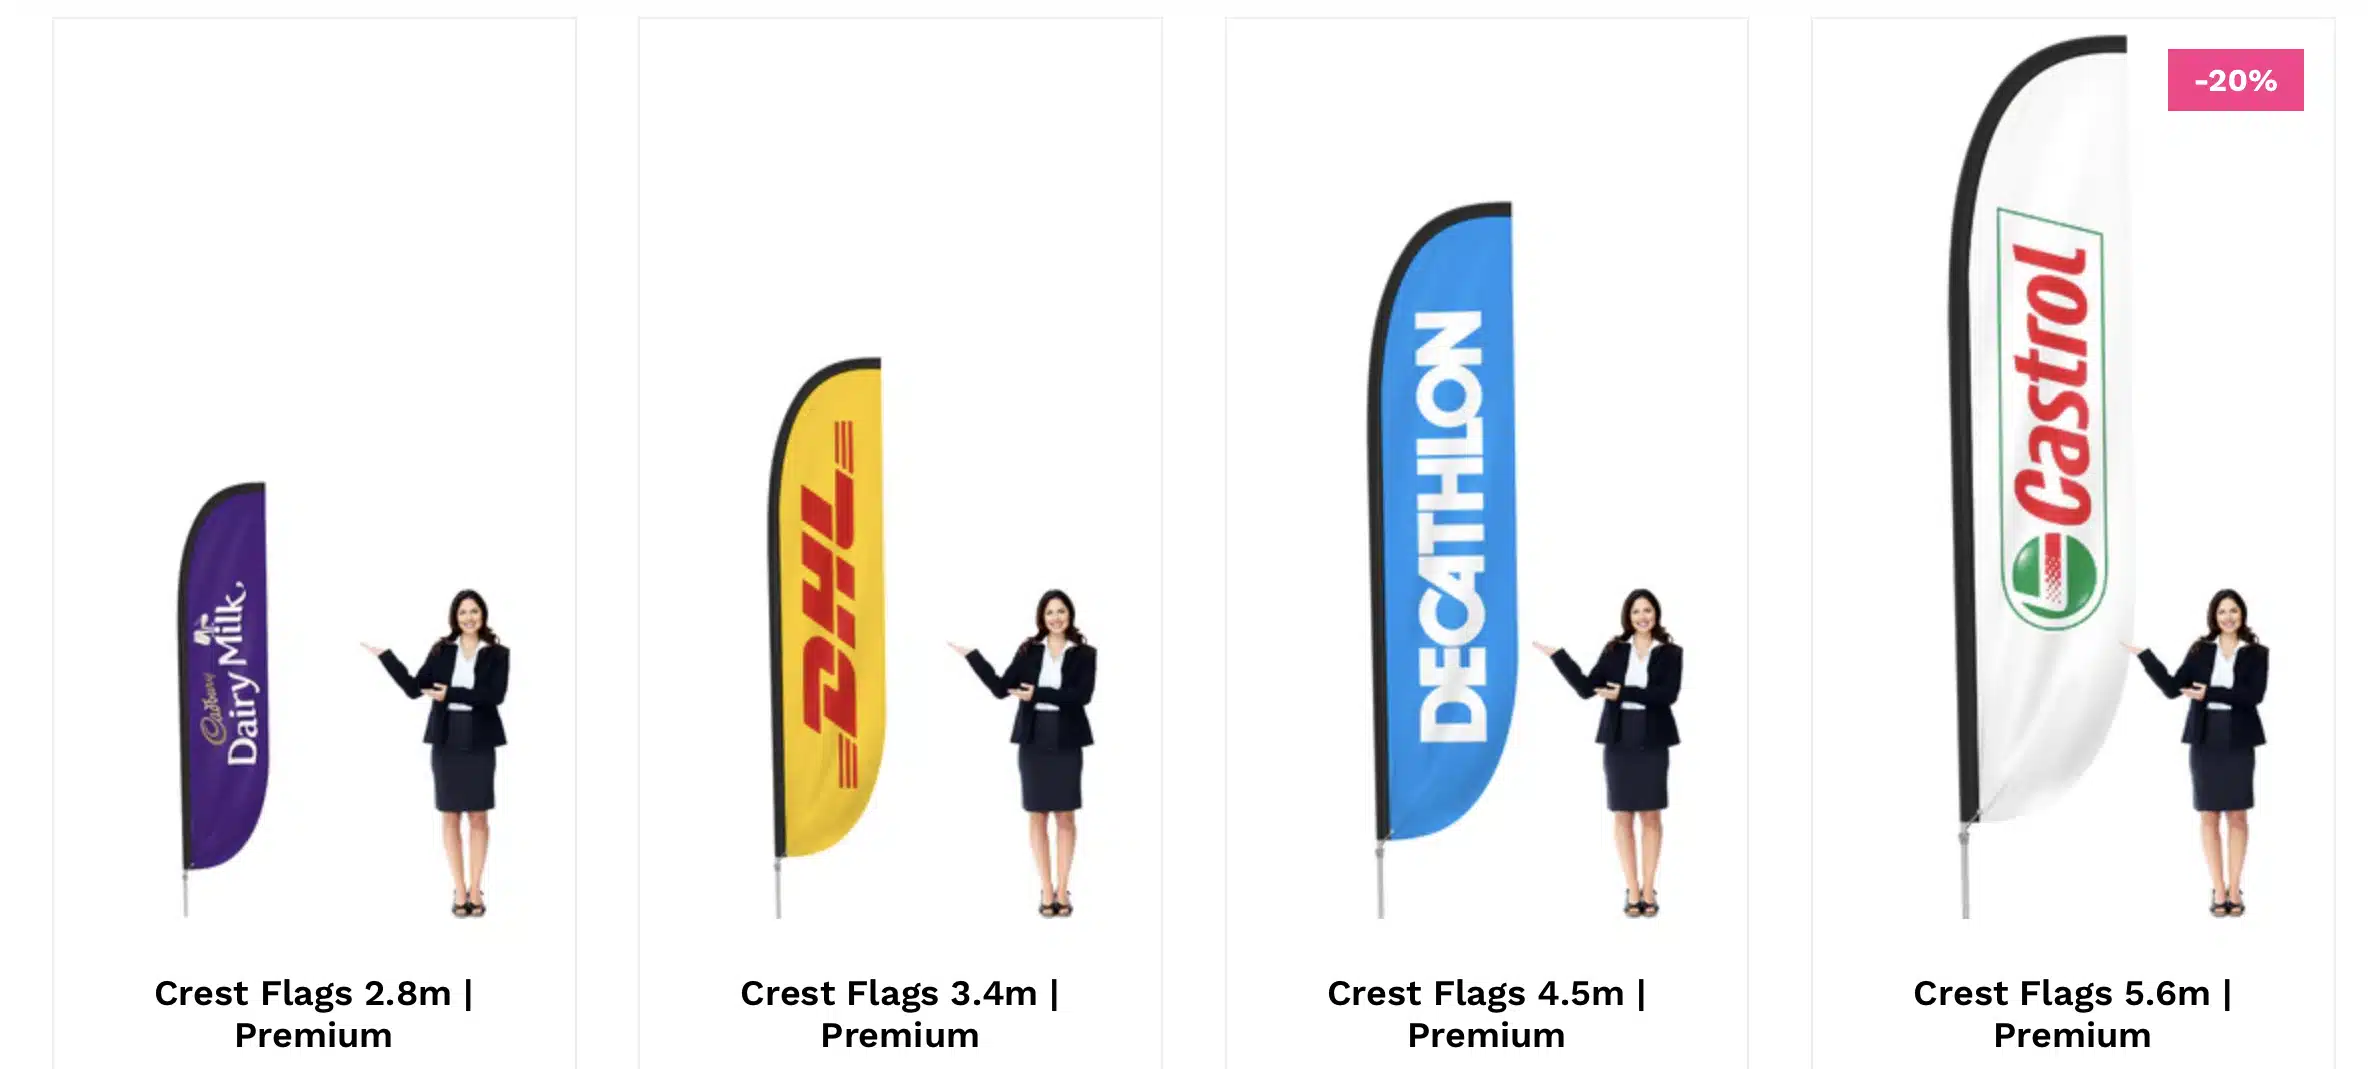 Crest flag sizes